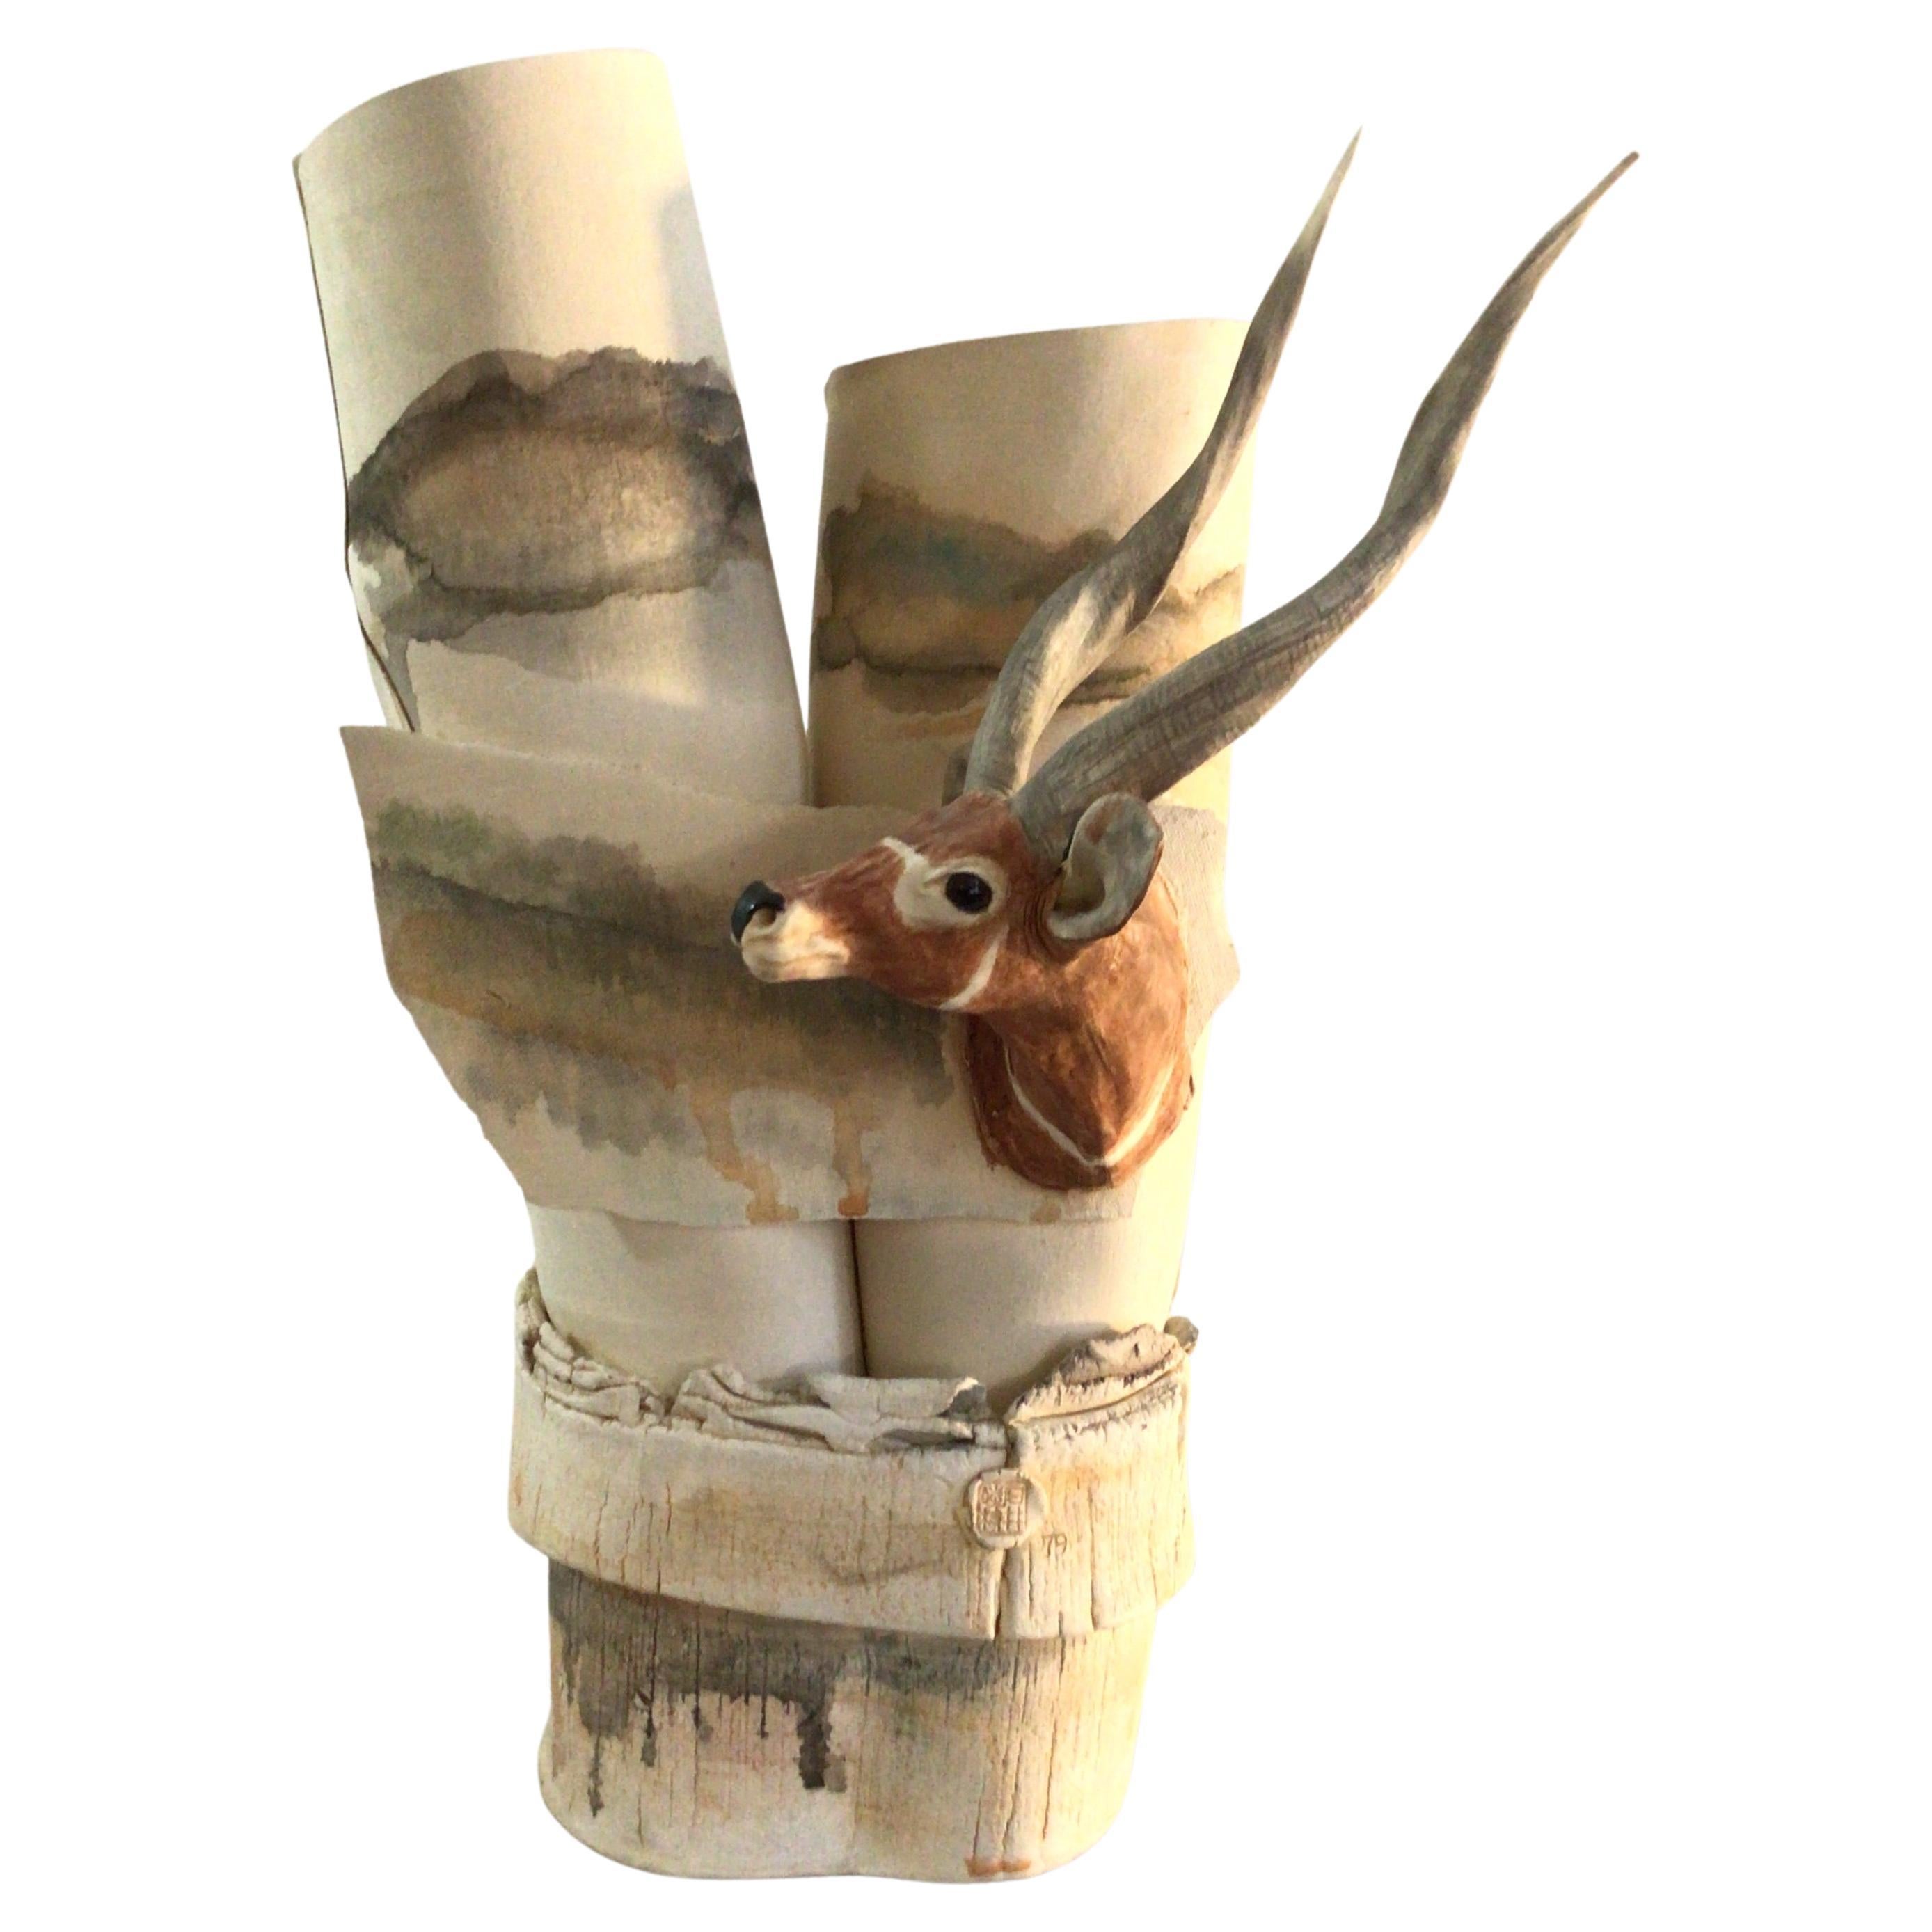 Sculpture en poterie des années 1970 représentant une gazelle ou une antilope "estampillée".